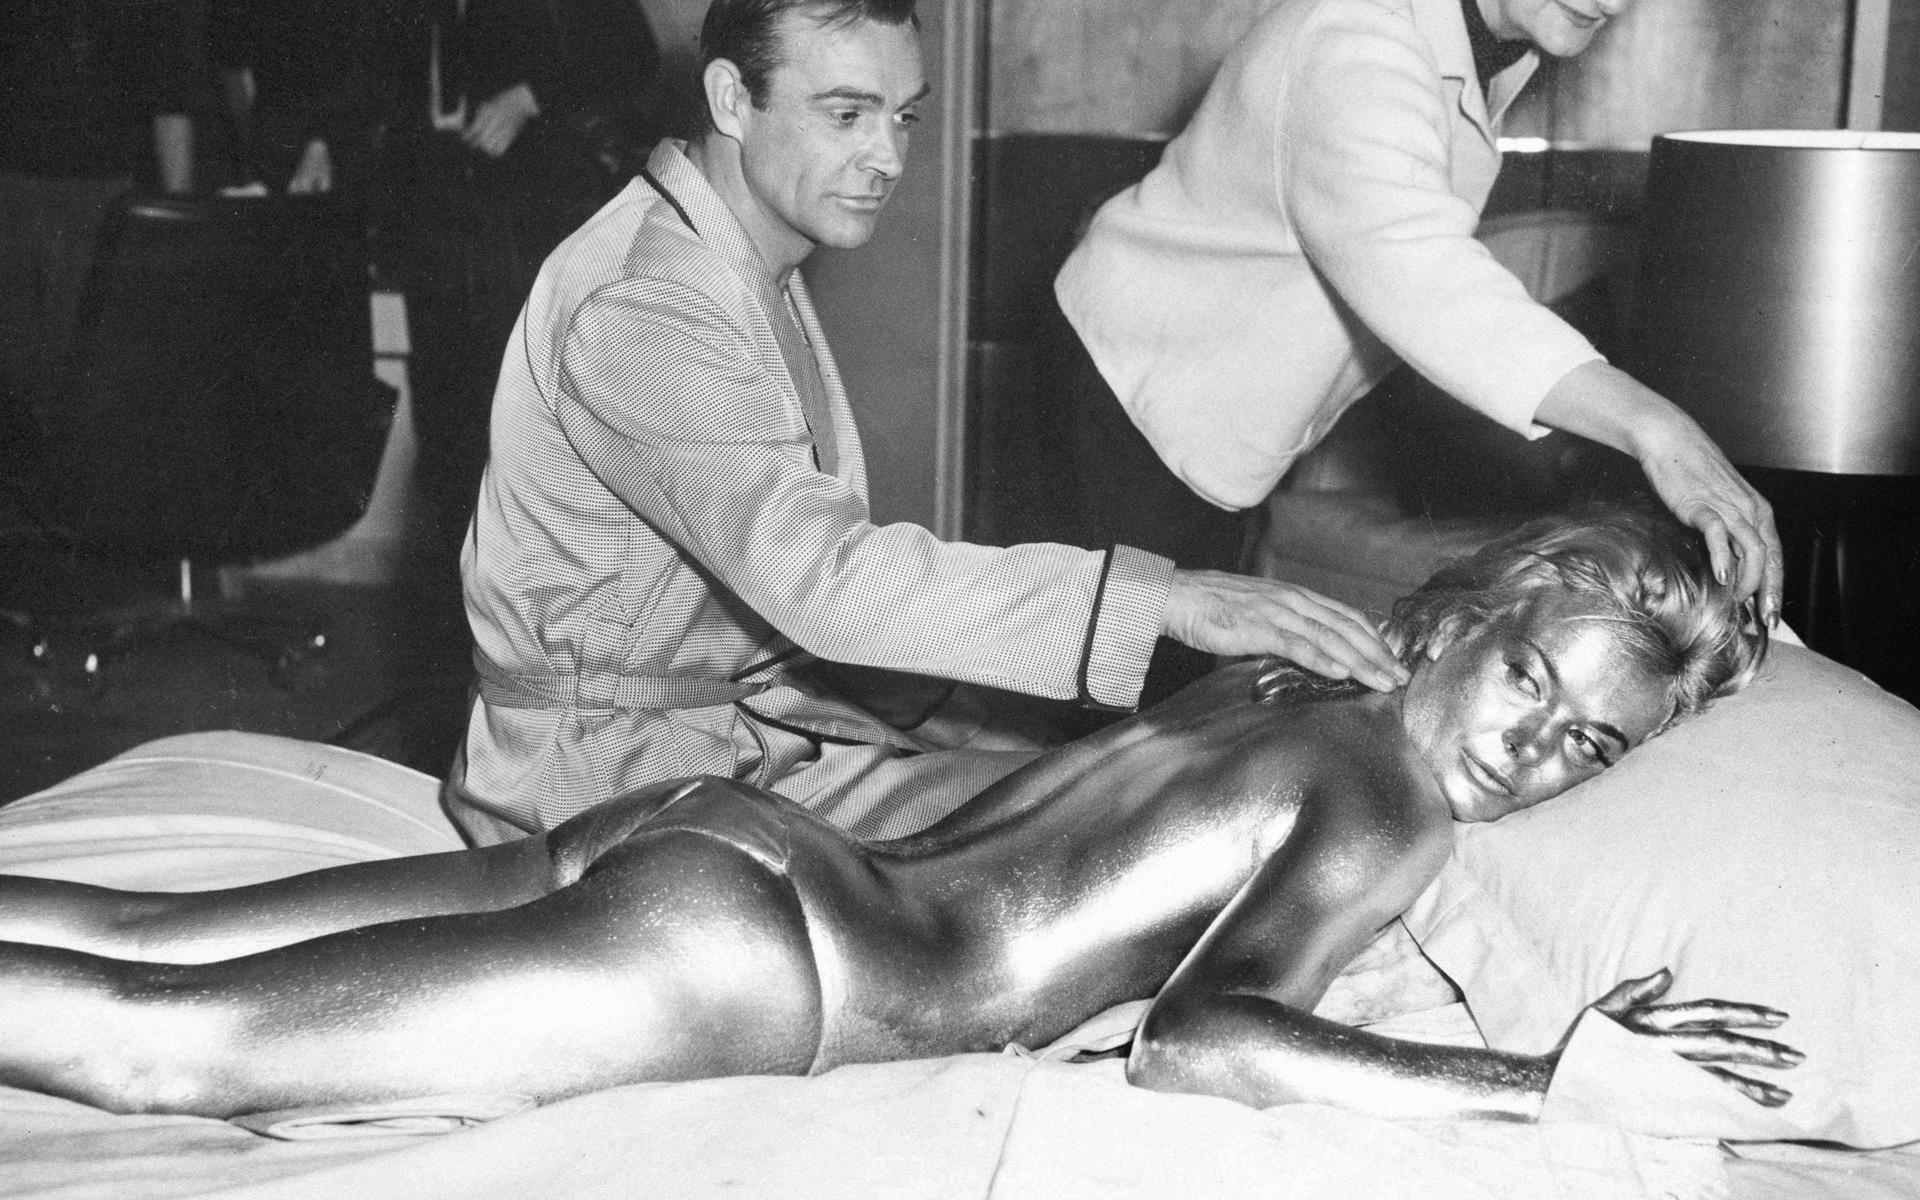 James Bond, spelad av Sean Connery, och Shirley Eaton målad i guld för en scen i Bondfilmen ”Goldfinger”. Filmen var den tredje med Sean Connery i huvudrollen och den första Bondfilmen som regisserades av Guy Hamilton, som skulle komma att regissera ytterligare tre.